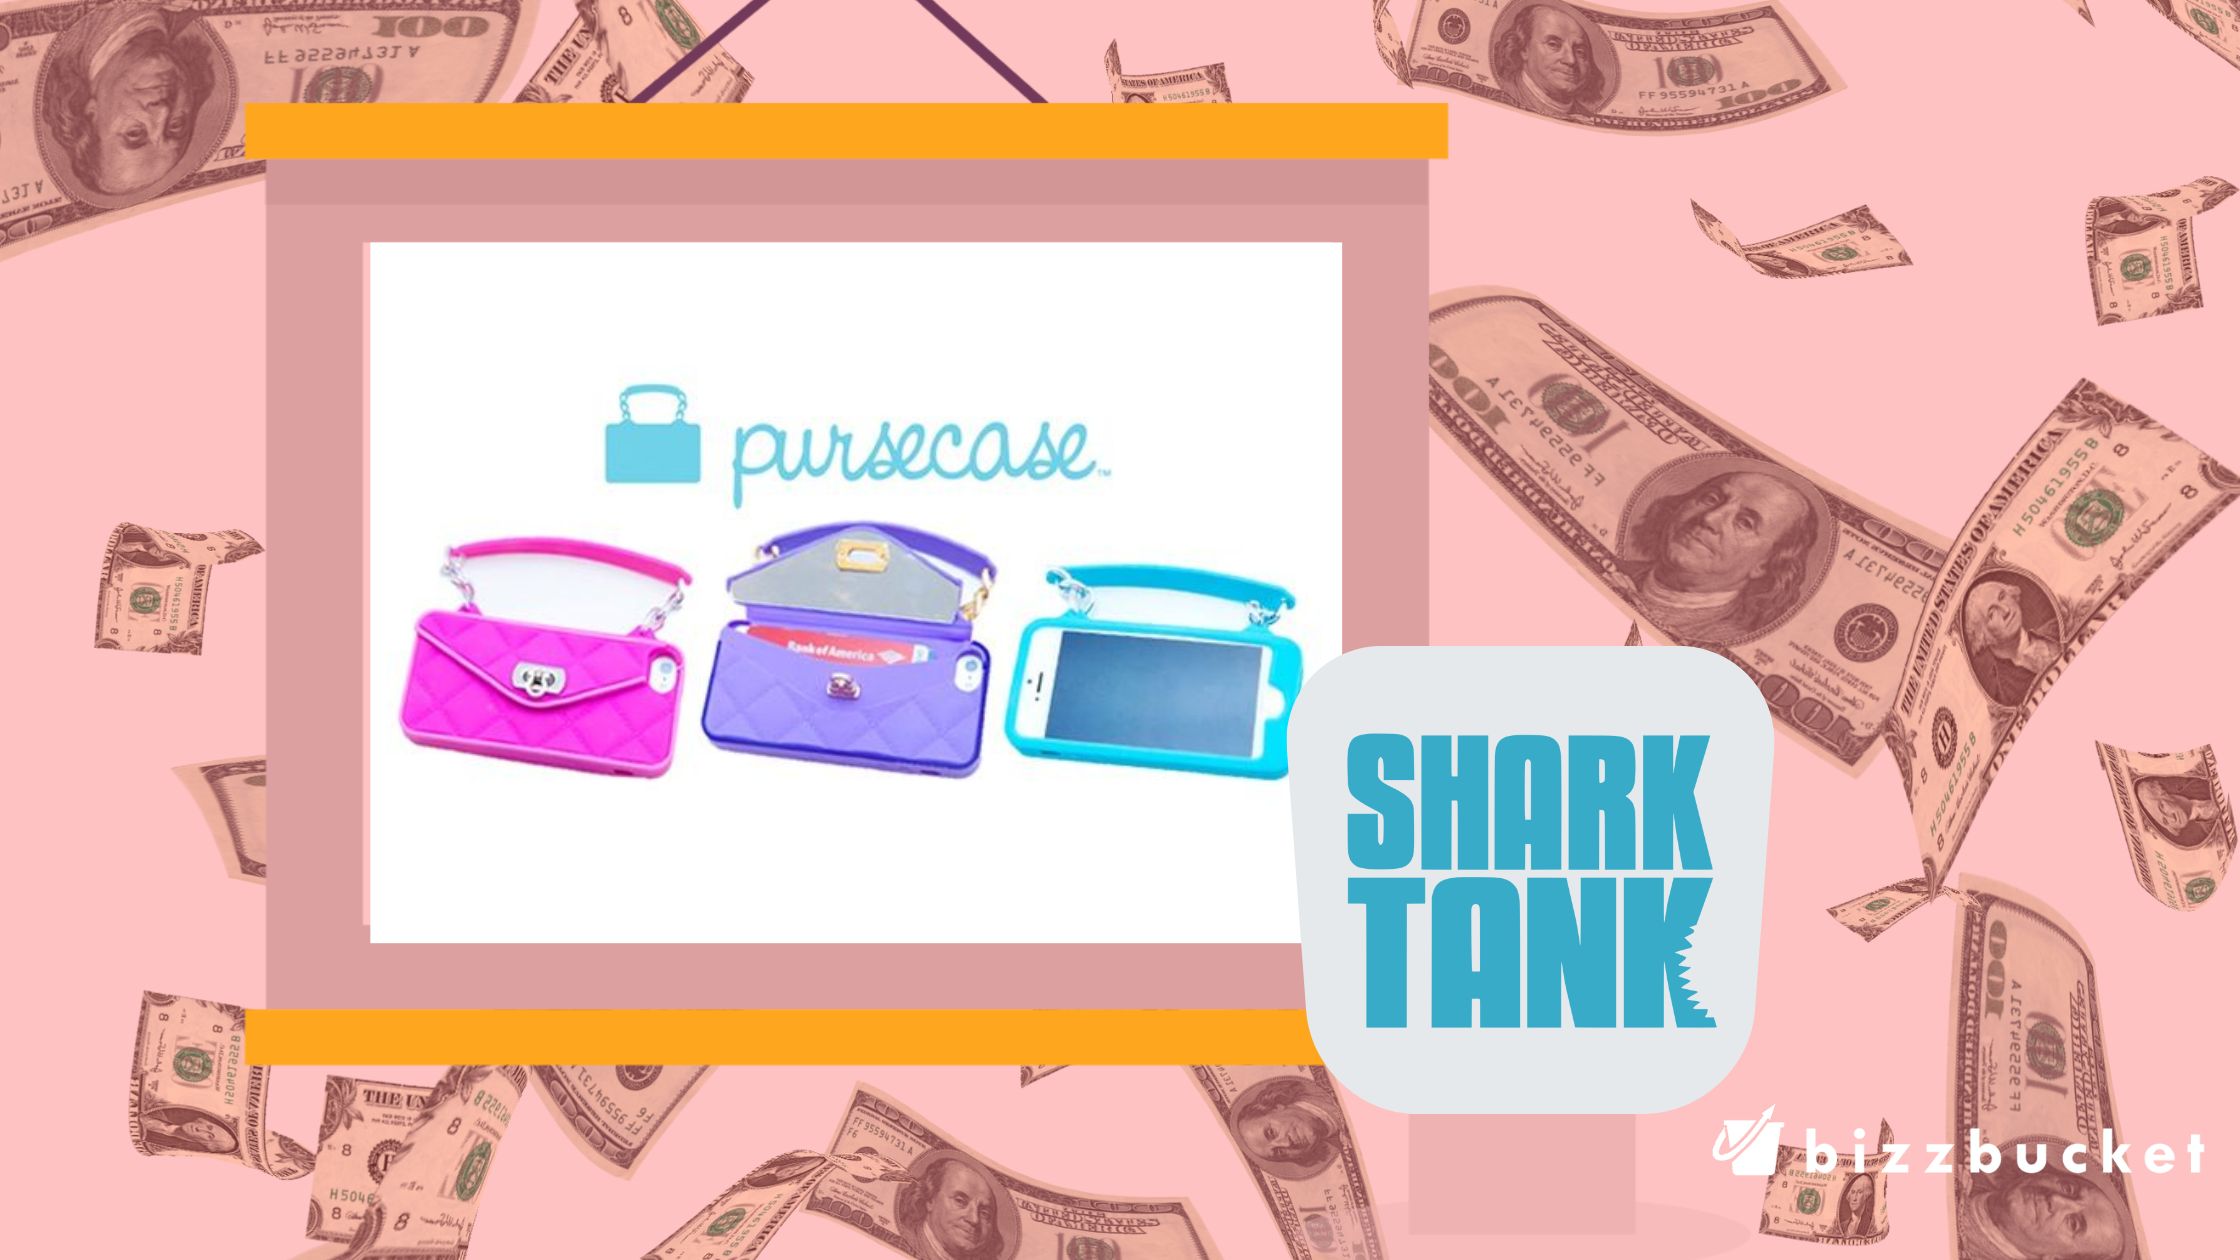 PurseCase shark tank update